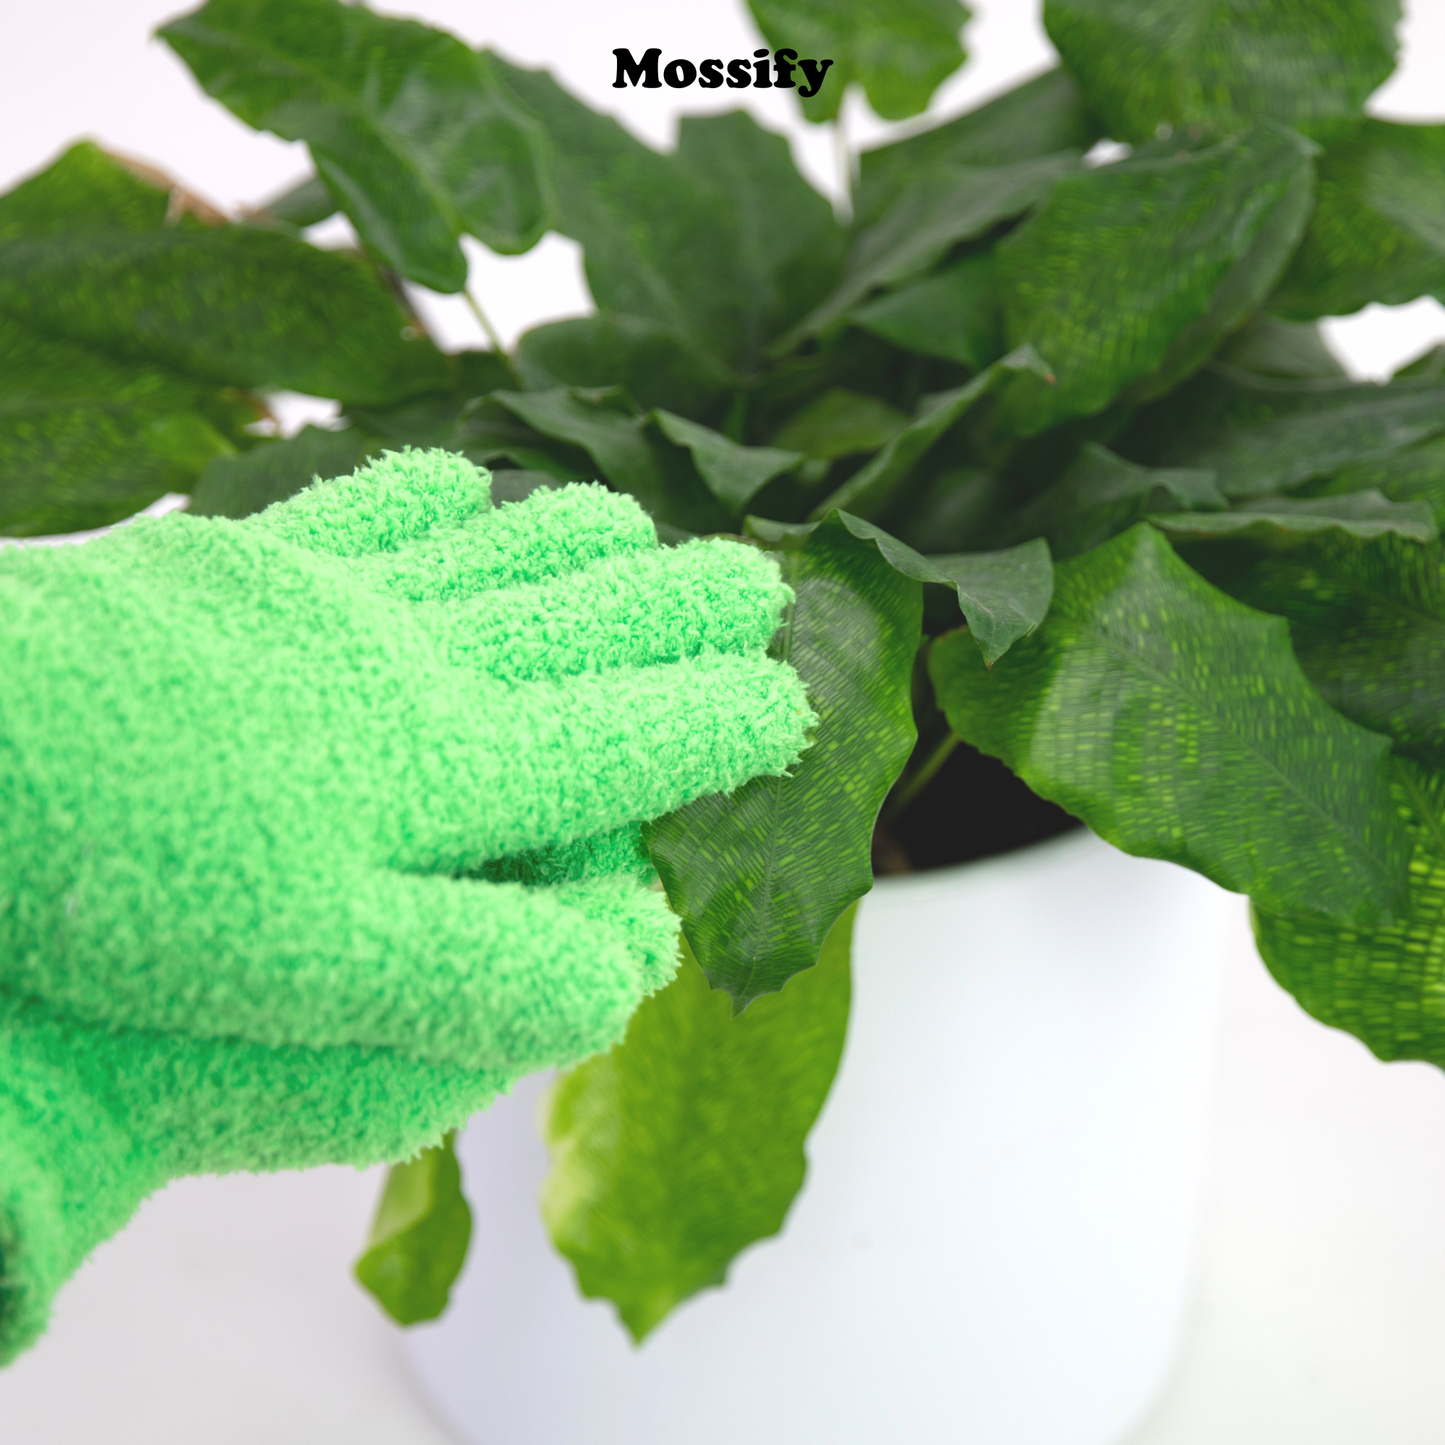 2 Microfiber Gloves - Leaf-Shining Gloves: Green